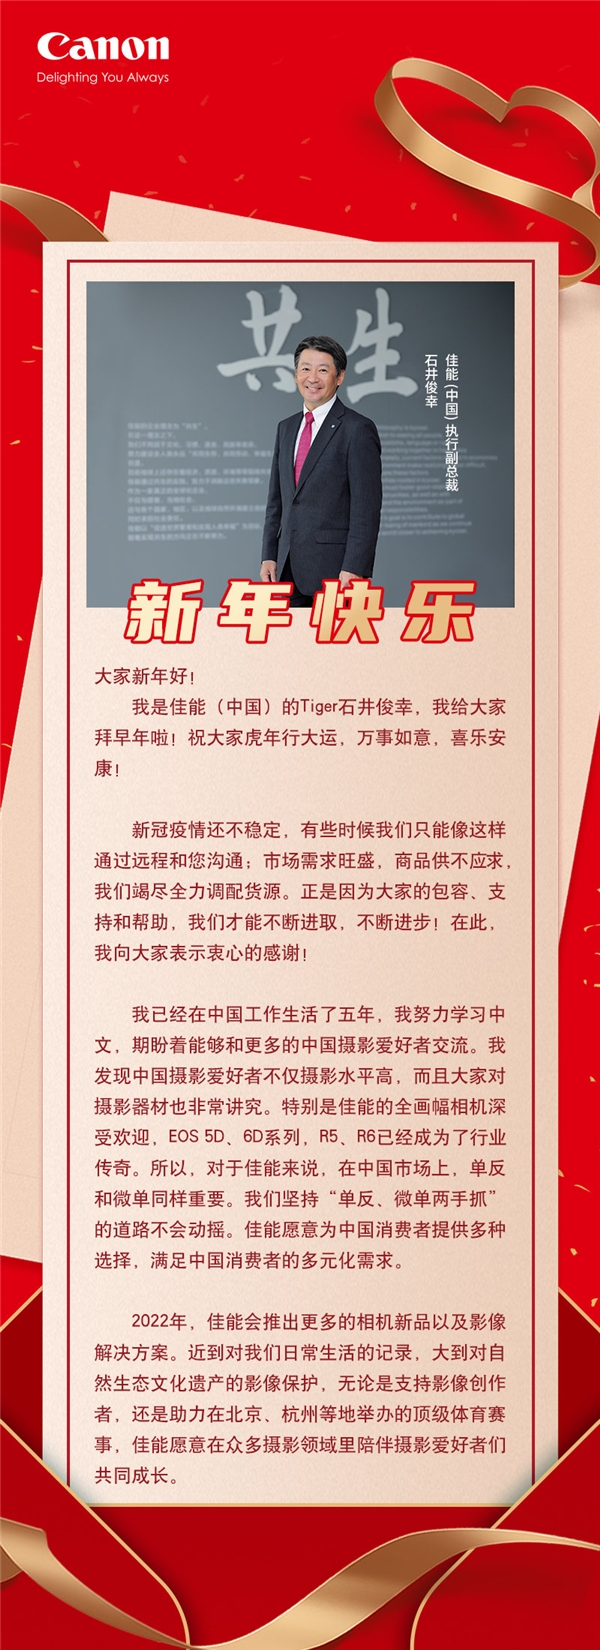 佳能石井俊幸发表2022年新春祝语祝中国消费者虎年行大运